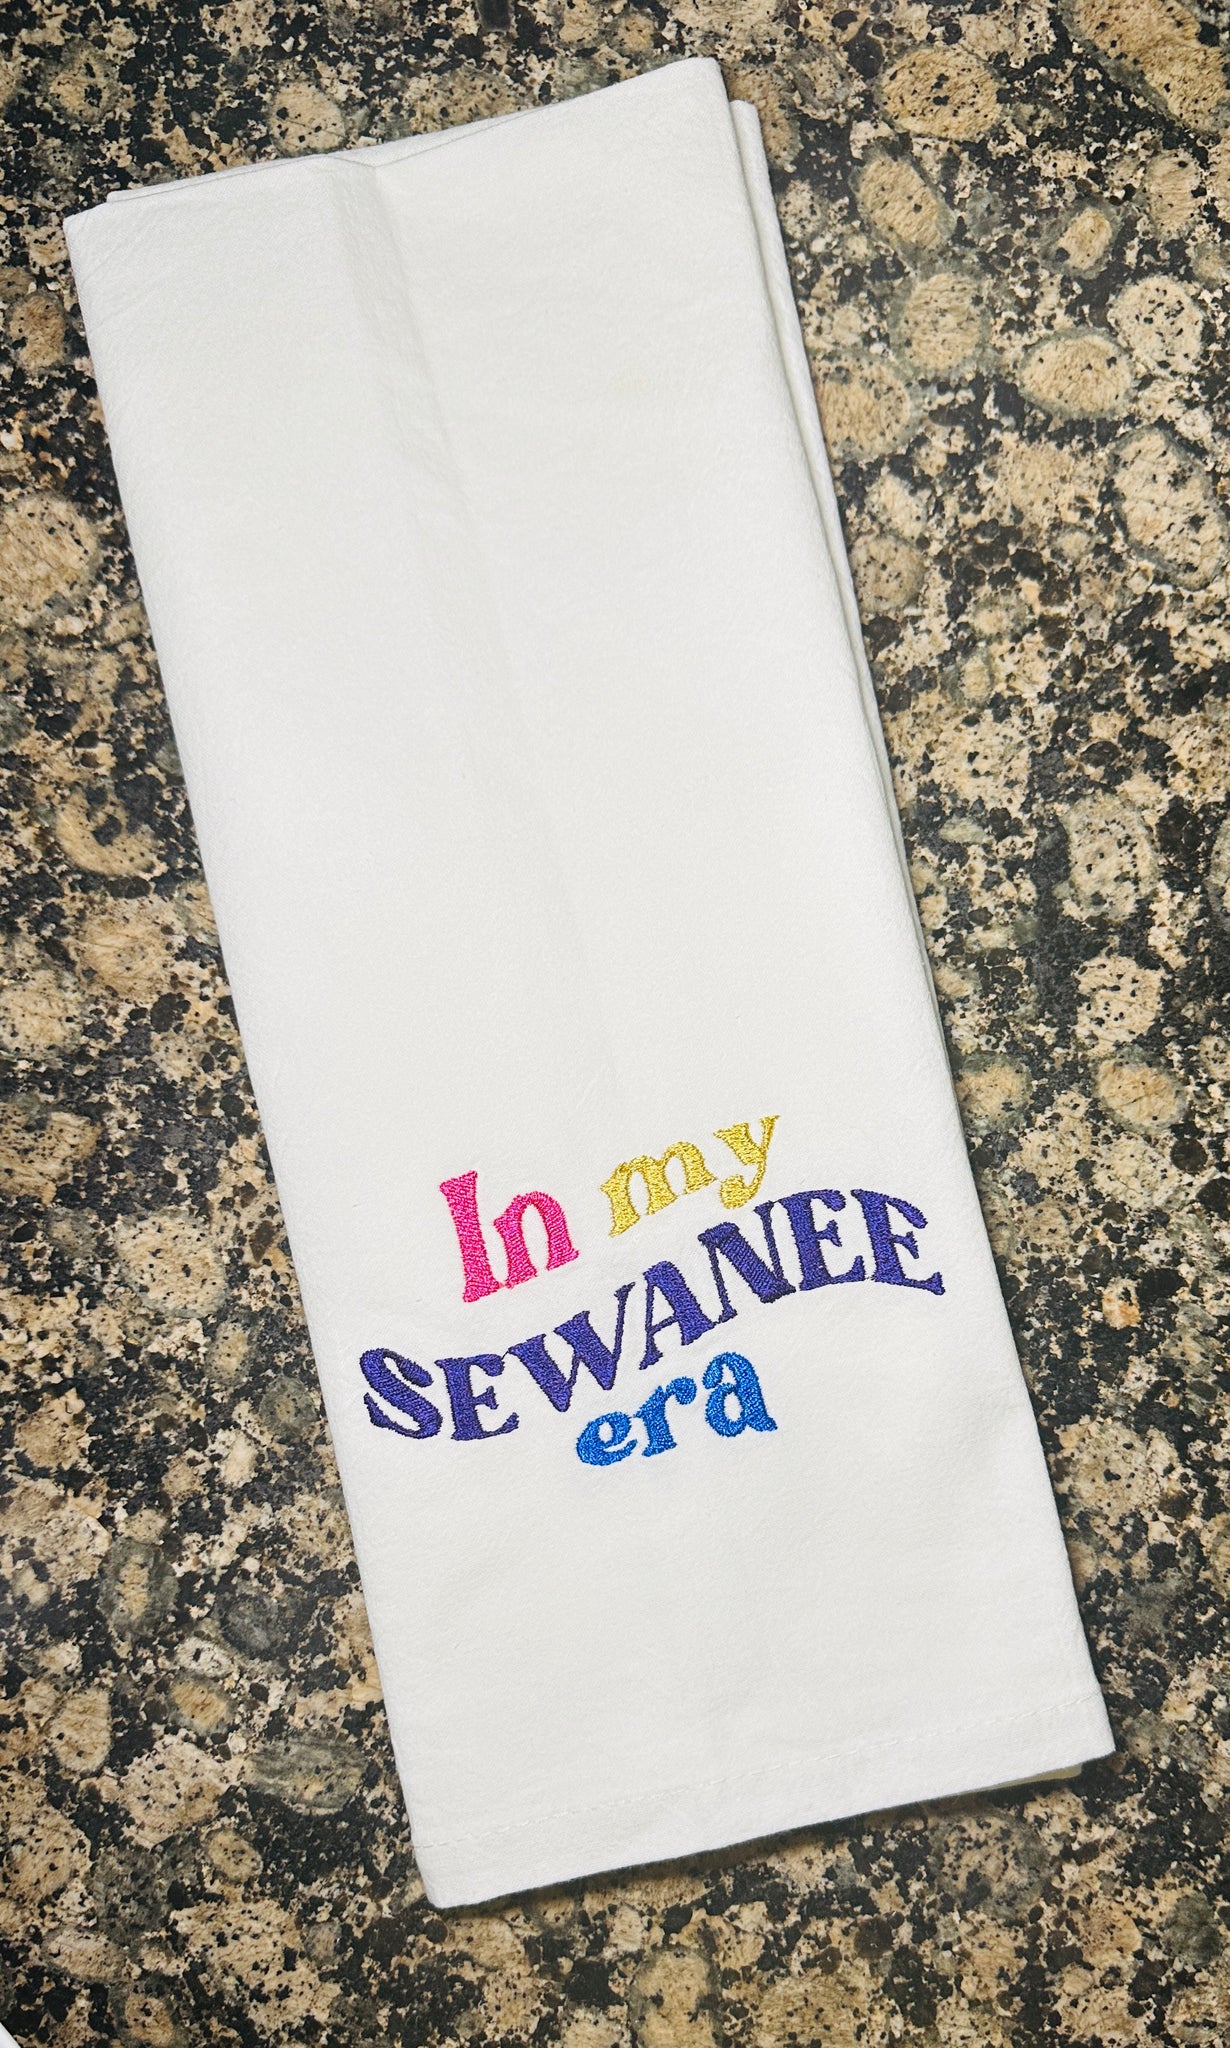 Sewanee era flour sack towel